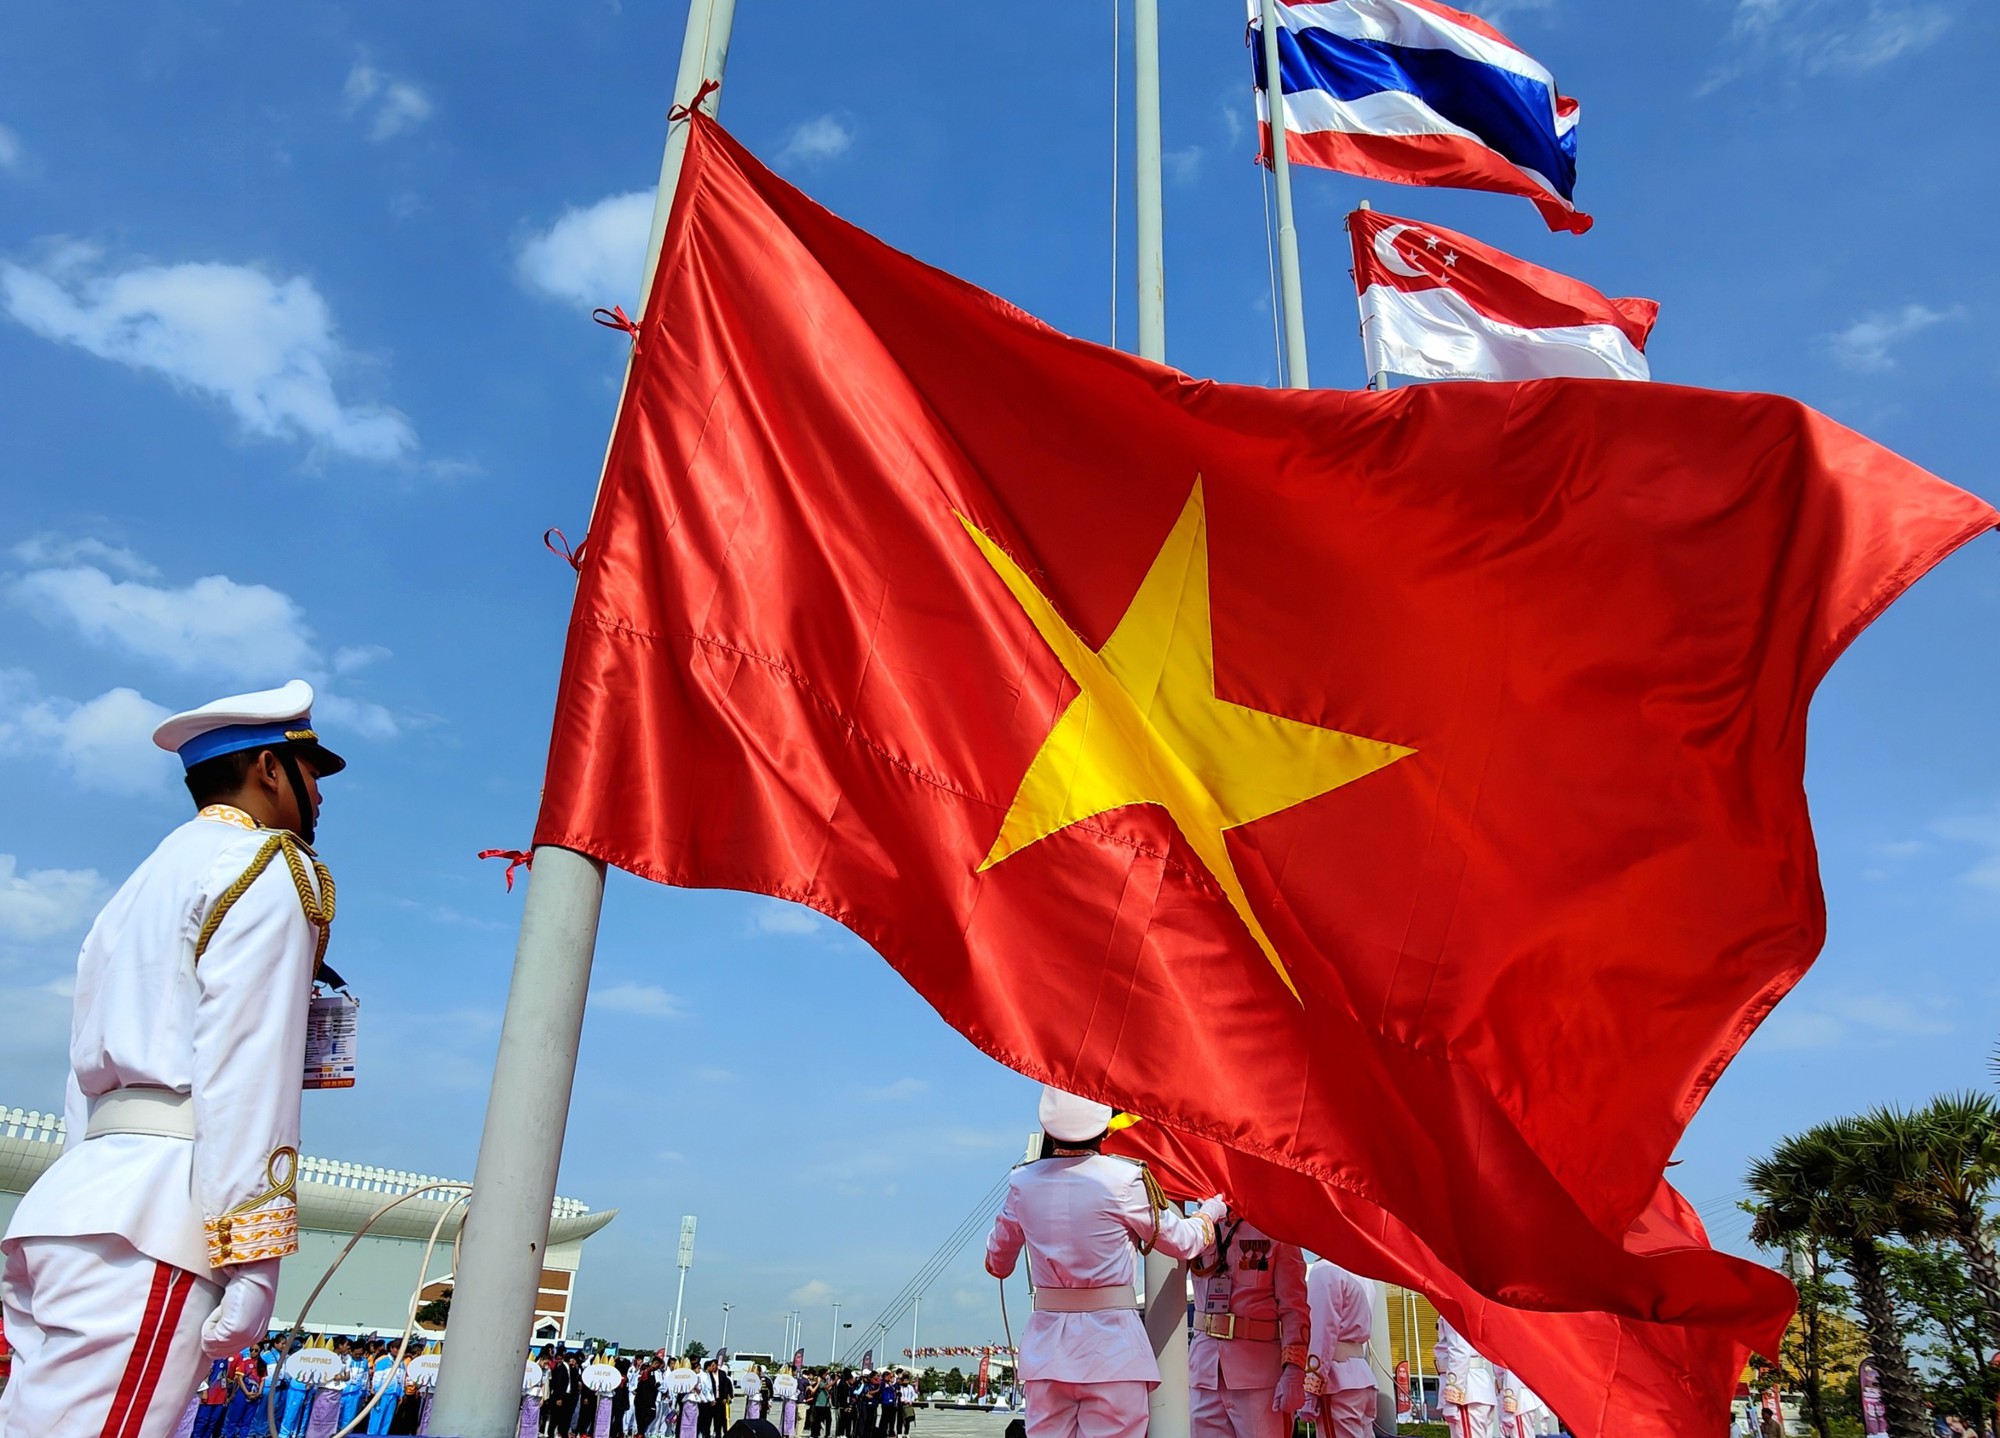 Chụp ảnh miễn phí với lá cờ Việt Nam